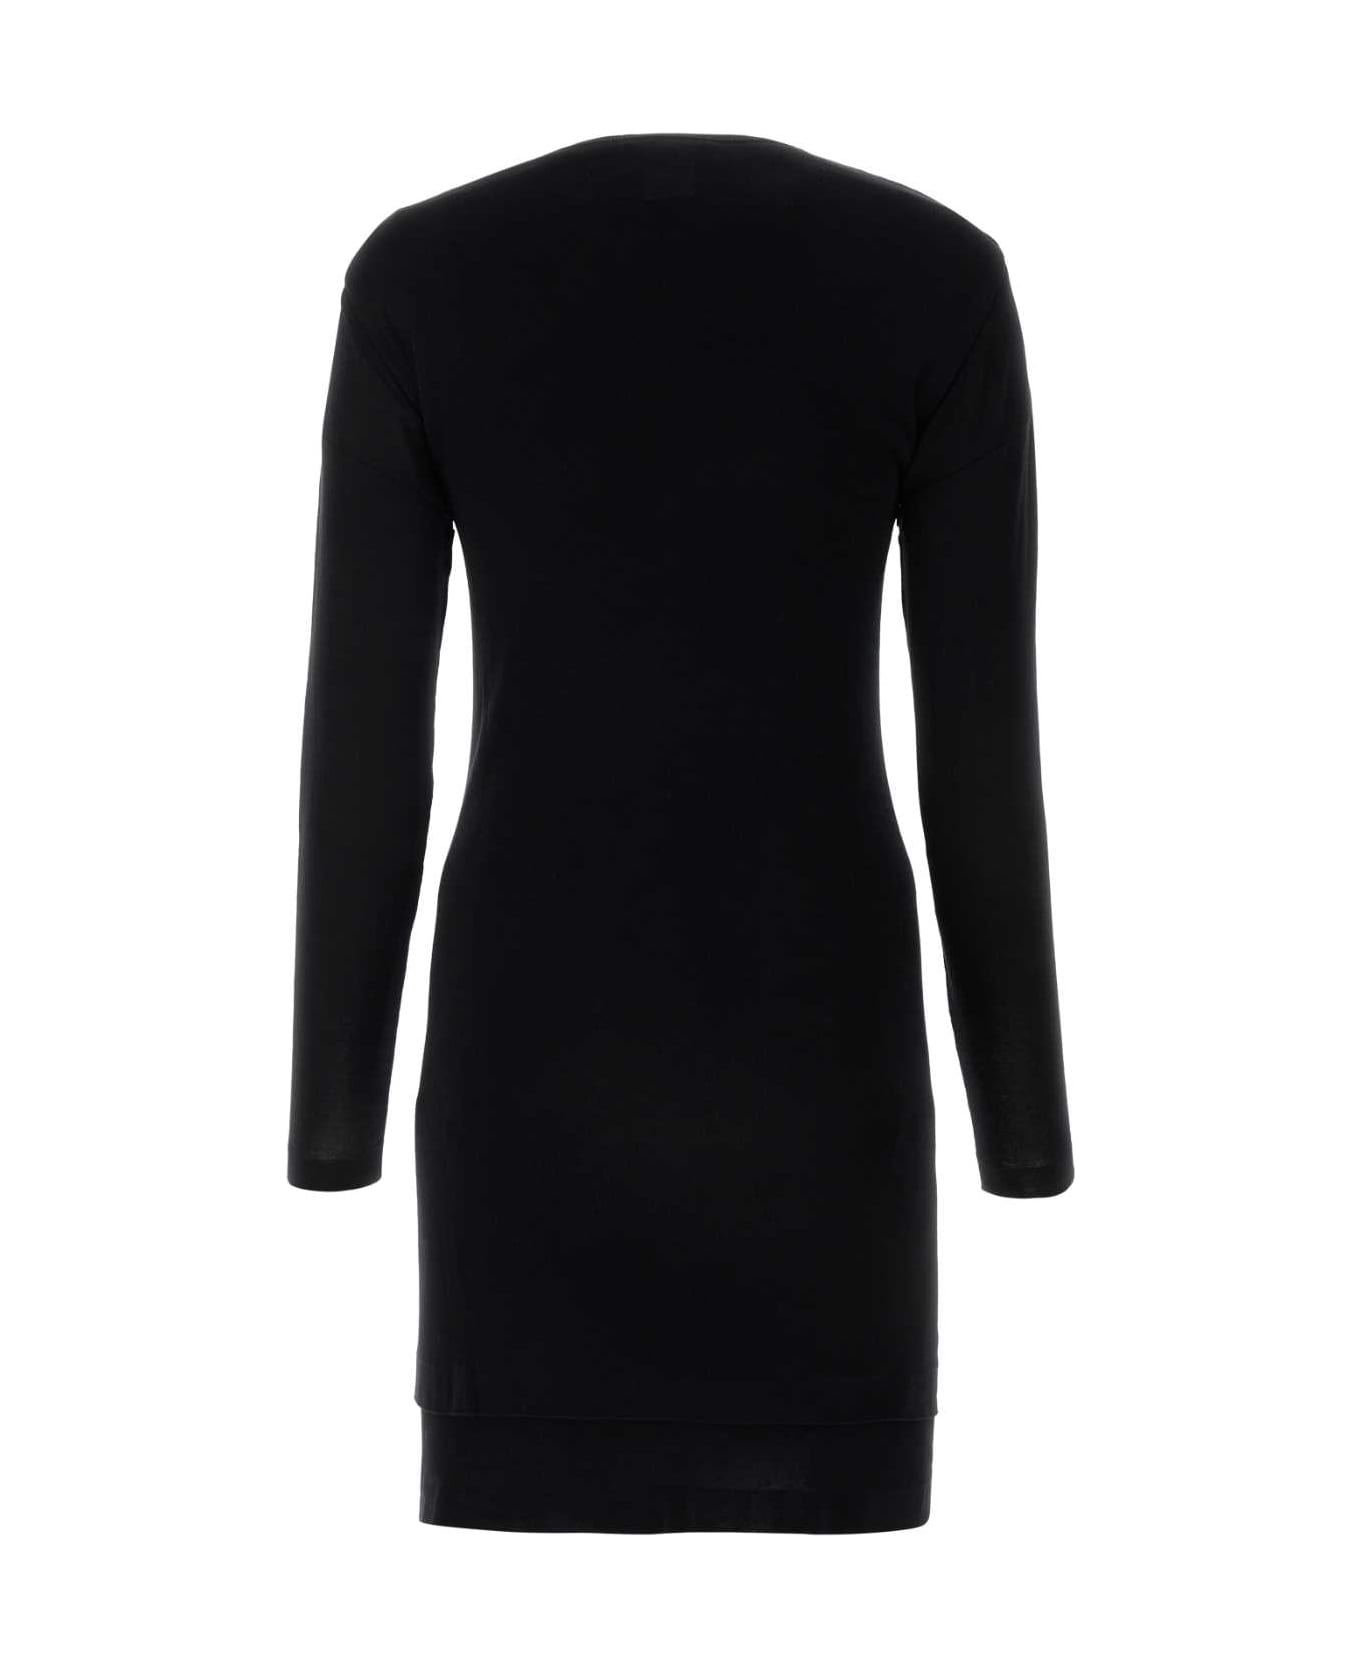 Lemaire Black Cotton Dress - BLACK